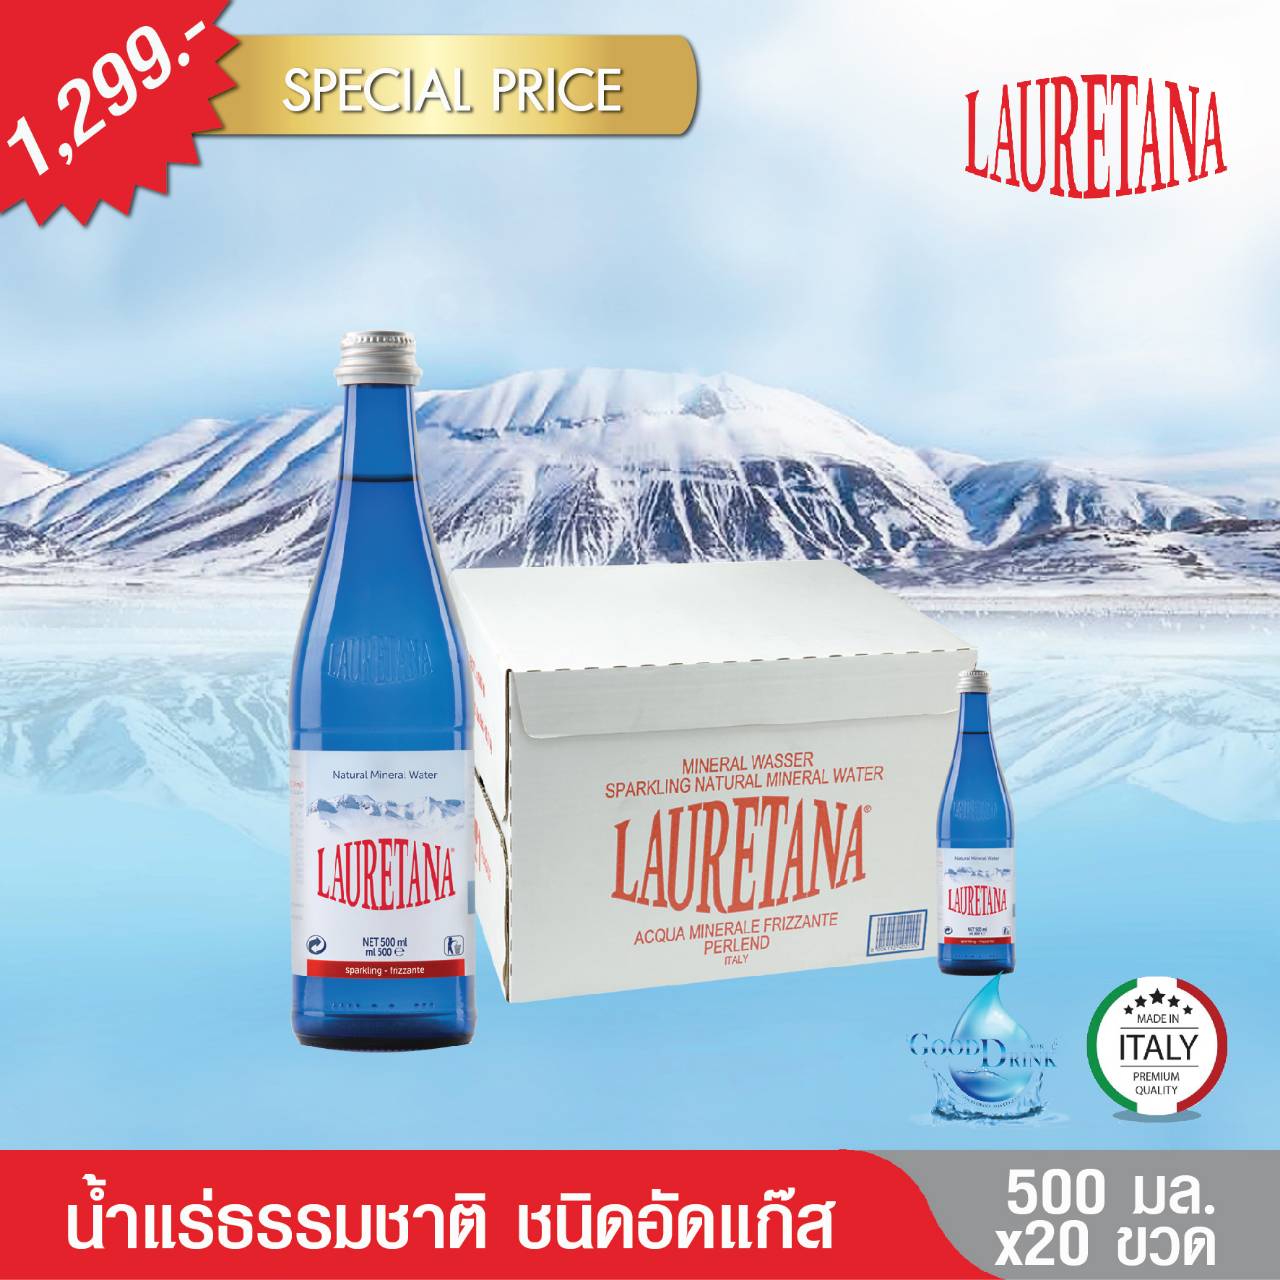 Lauretana Natural Sparkling Mineral Water VAP Glass Bottles 500 ML. Pack 20 bottles , เลาว์เรตาน่า น้ำแร่ธรรมชาติชนิดอัดแก๊ส ขวดแก้ว 500 มล. แพค 20 ขวด